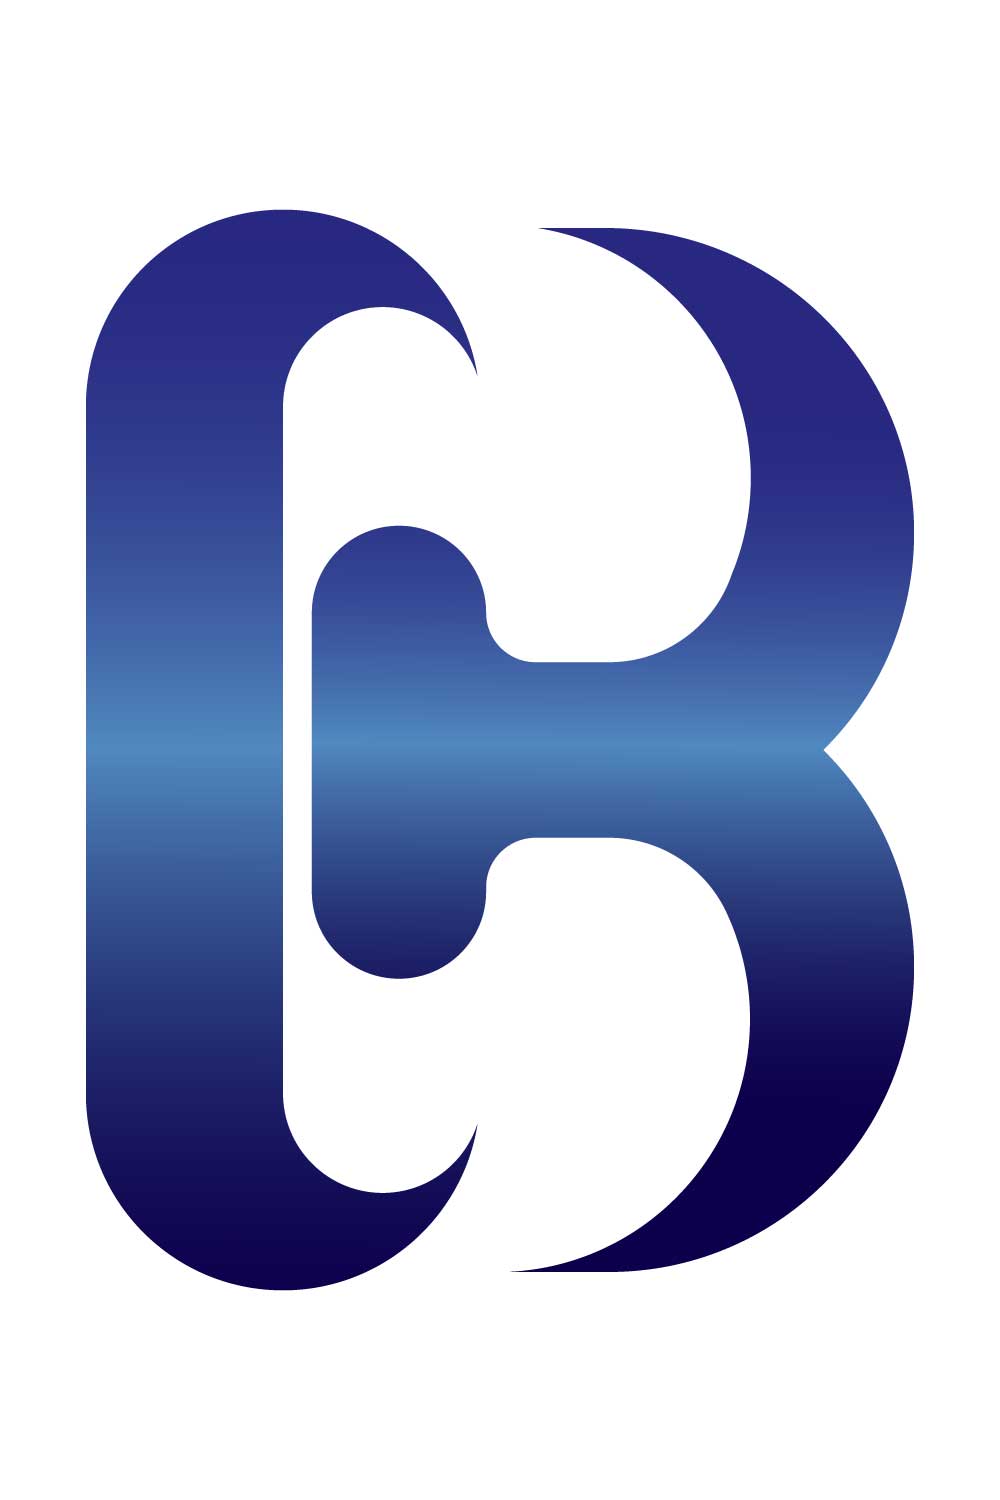 Creative CB Letter Logo pinterest image.